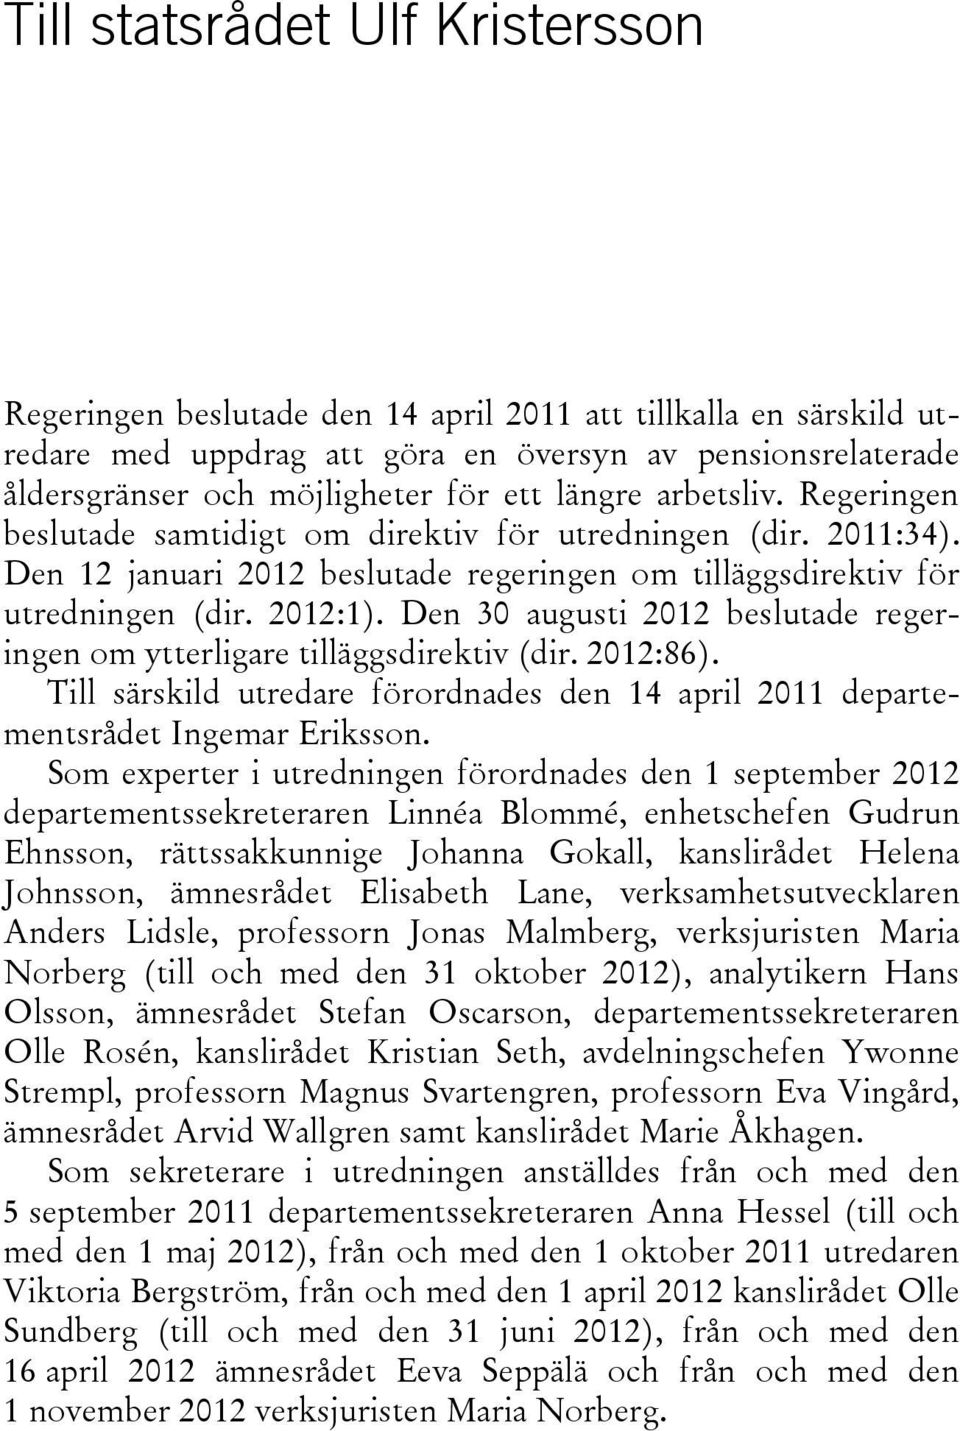 Den 30 augusti 2012 beslutade regeringen om ytterligare tilläggsdirektiv (dir. 2012:86). Till särskild utredare förordnades den 14 april 2011 departementsrådet Ingemar Eriksson.